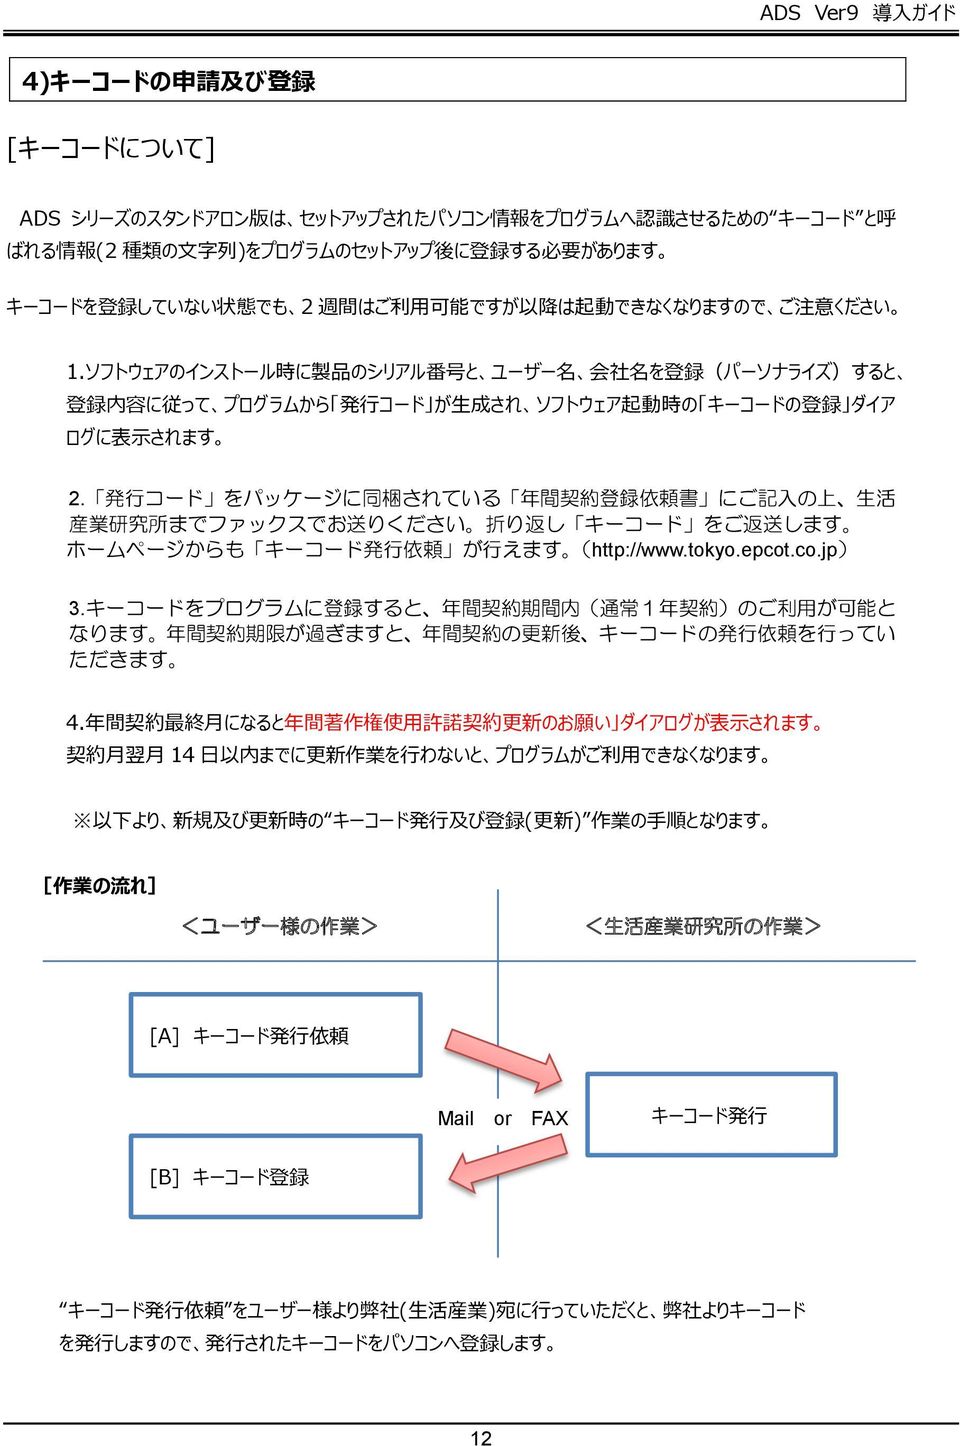 発 行 コード をパッケージに 同 梱 されている 年 間 契 約 登 録 依 頼 書 にご 記 入 の 上 生 活 産 業 研 究 所 までファックスでお 送 りください 折 り 返 し キーコード をご 返 送 します ホームページからも キーコード 発 行 依 頼 が 行 えます (http://www.tokyo.epcot.co.jp) 3.